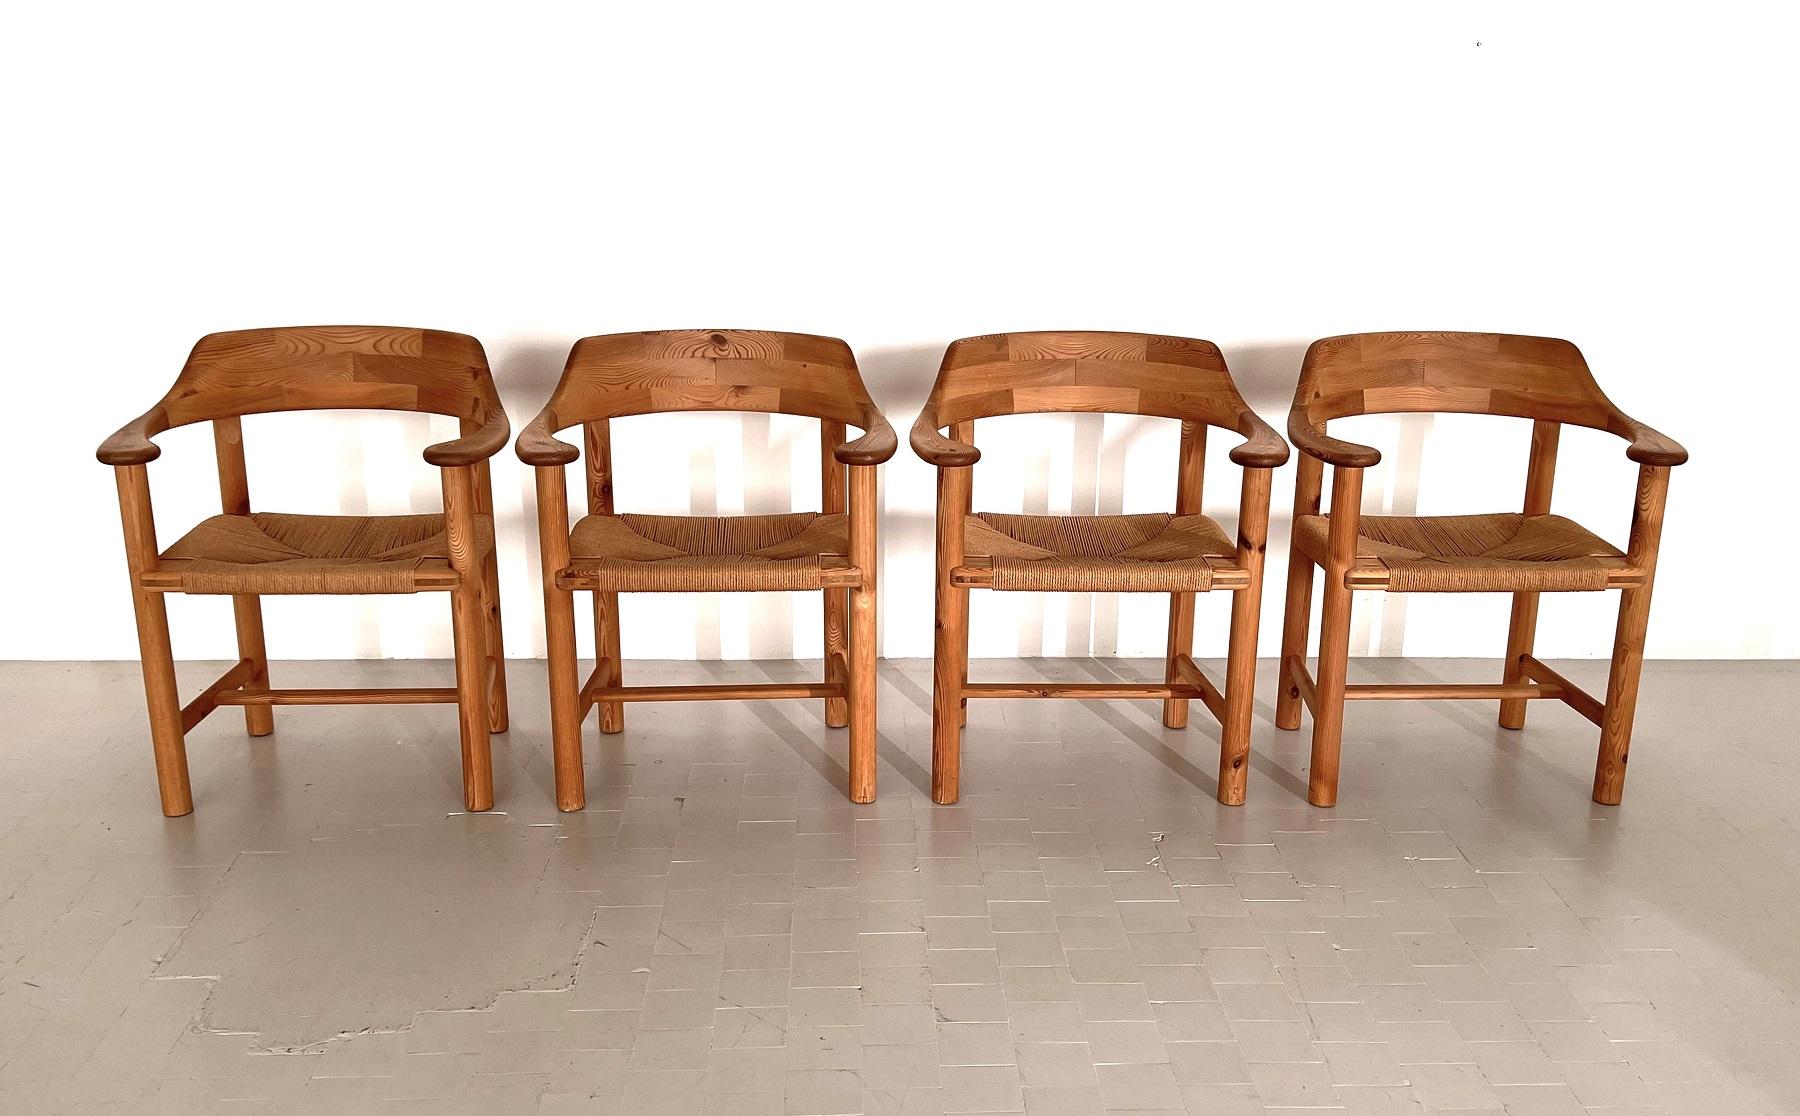 Rainer Daumiller, bois de pin, corde de papier, Danemark, 1970

Magnifique, organique et naturel ensemble de 4 fauteuils ou chaises de salle à manger en pin massif.
Magnifique expression naturelle et grain du bois clair. 
L'assise tressée en corde